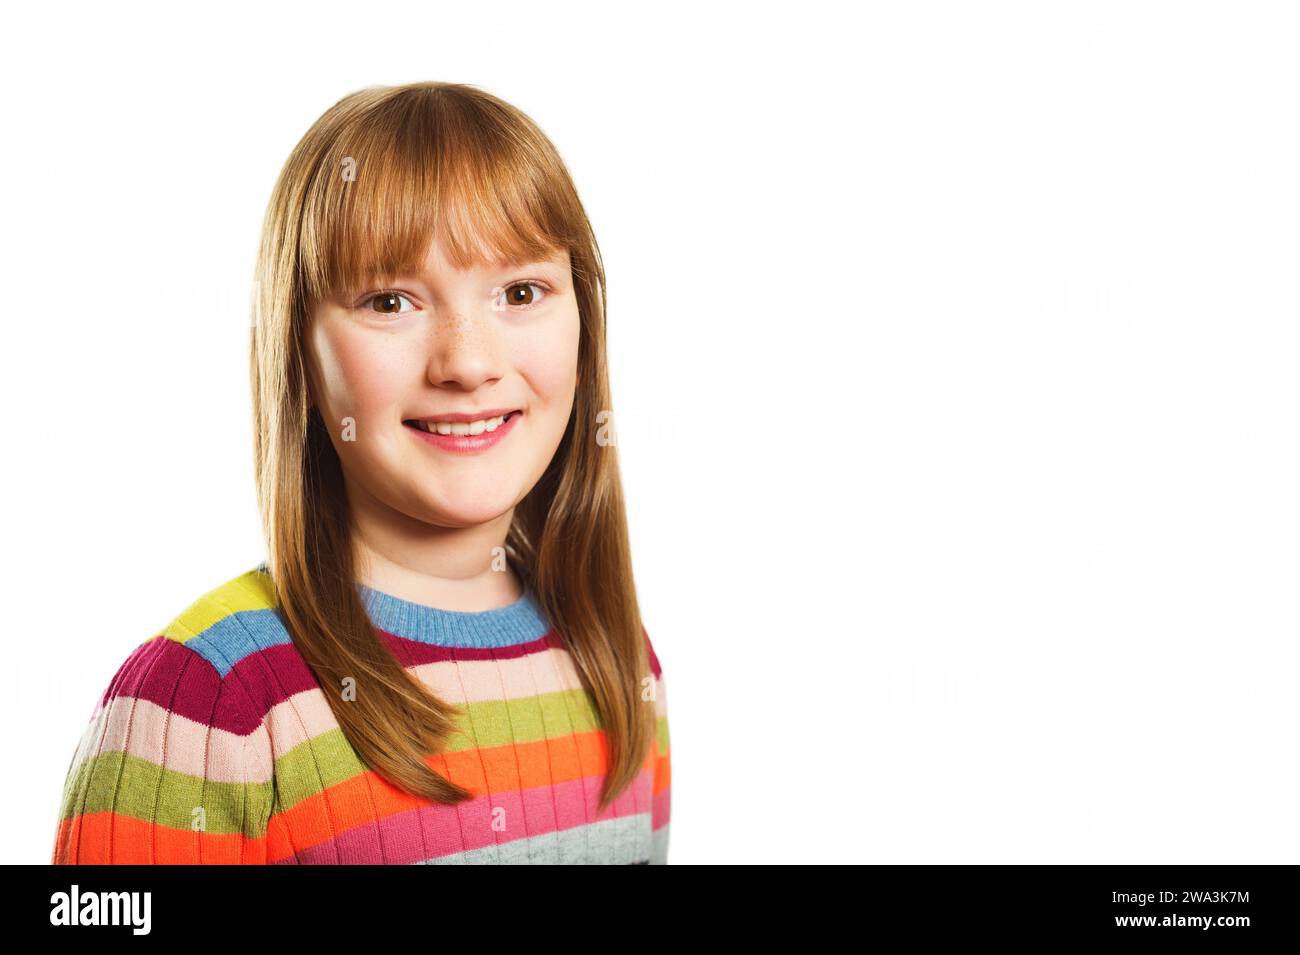 Photo de studio de la jeune petite fille de 9-10 ans, portant un pull coloré, fond blanc Banque D'Images